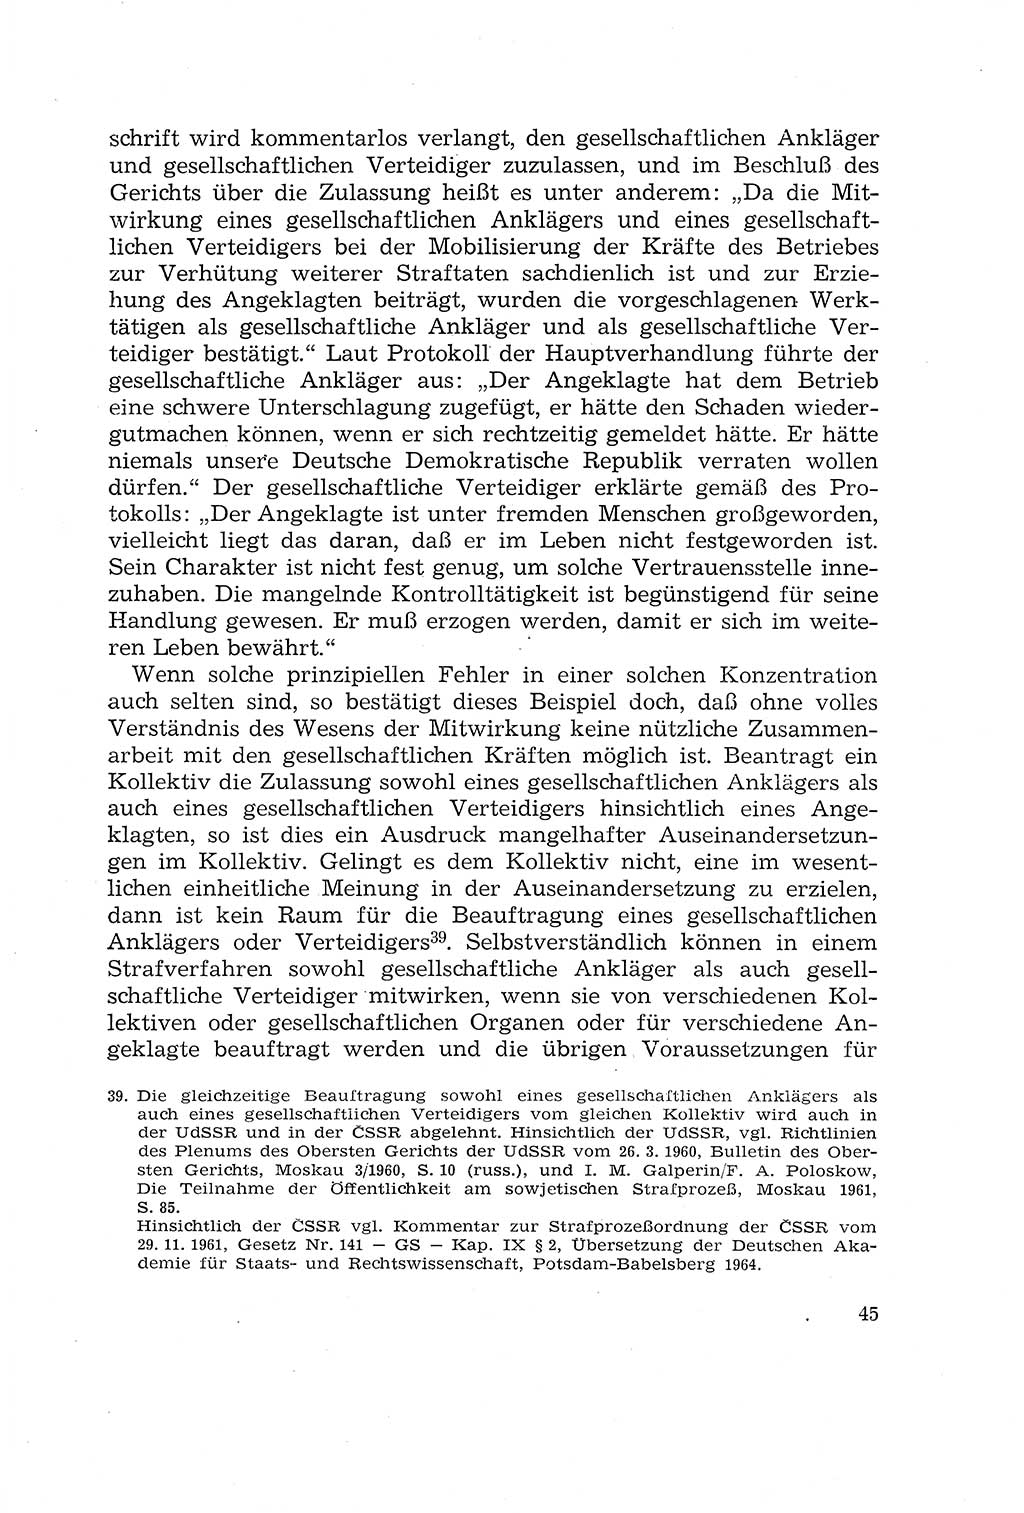 Die Mitwirkung der Werktätigen am Strafverfahren [Deutsche Demokratische Republik (DDR)] 1966, Seite 45 (Mitw. Str.-Verf. DDR 1966, S. 45)